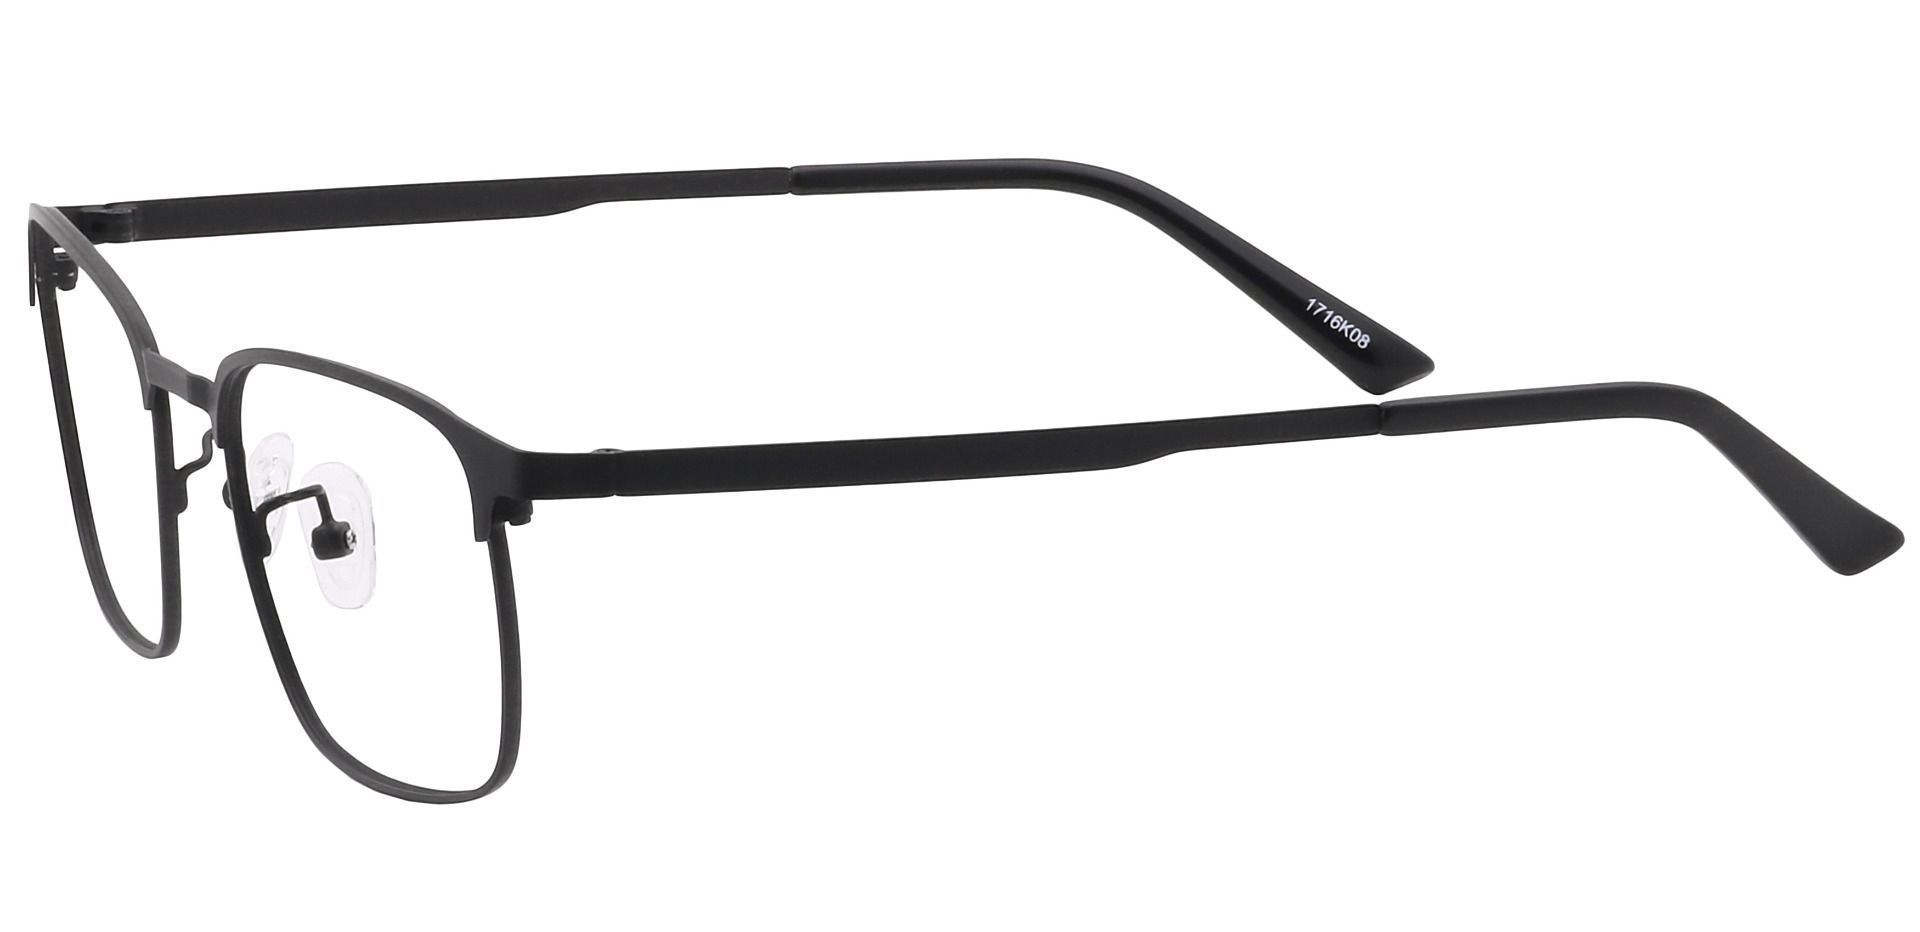 Kingston Square Non-Rx Glasses - Black